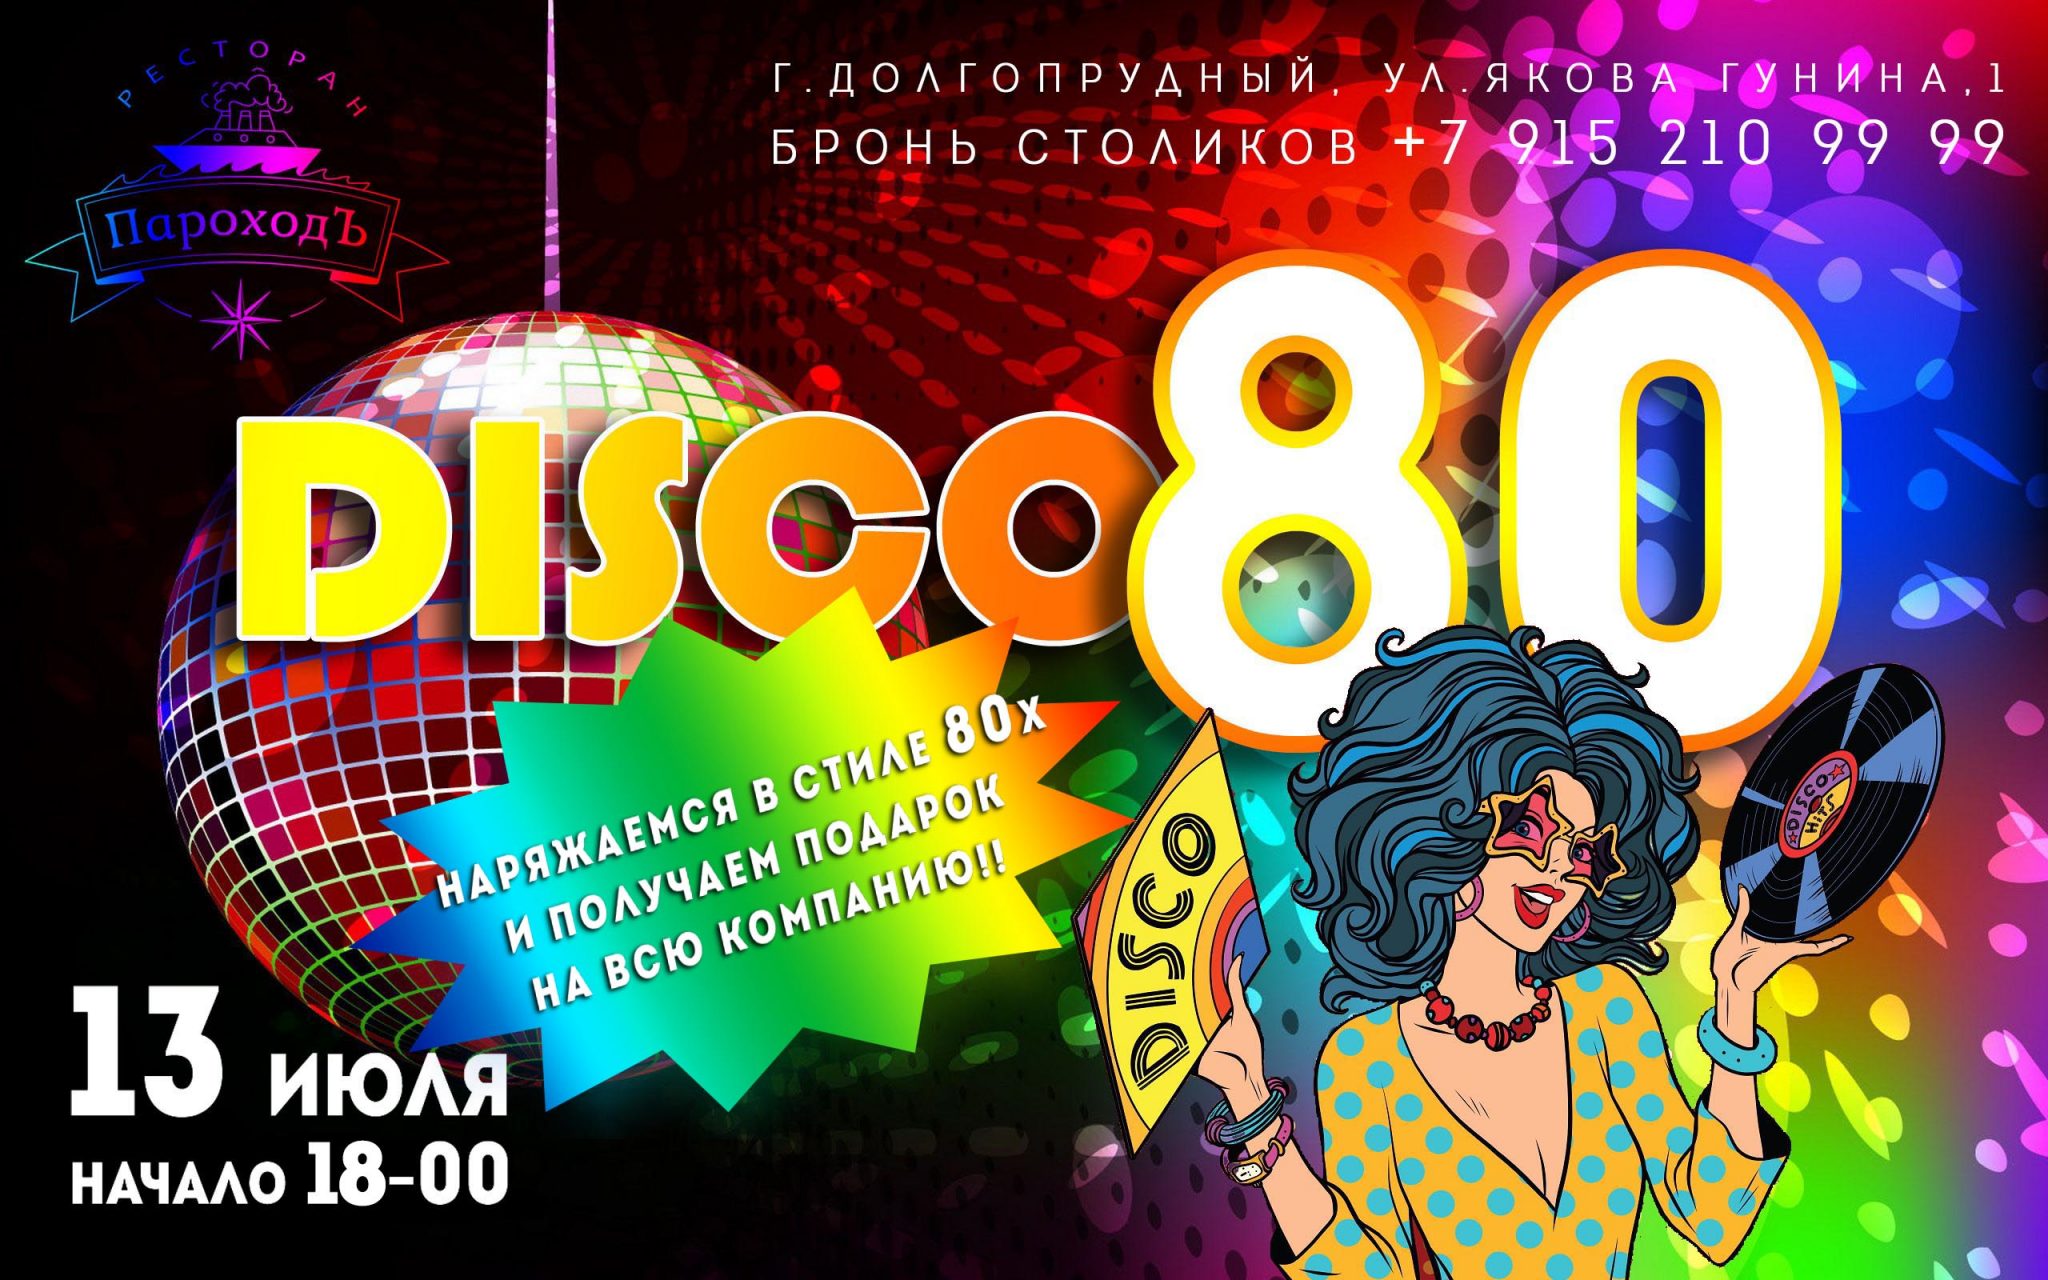 Сценка дискотека 80 х. Приглашение на вечеринку в стиле 80-х. Ретро вечеринка в стиле 80. Пригласительные в стиле диско. Плакат в стиле диско.